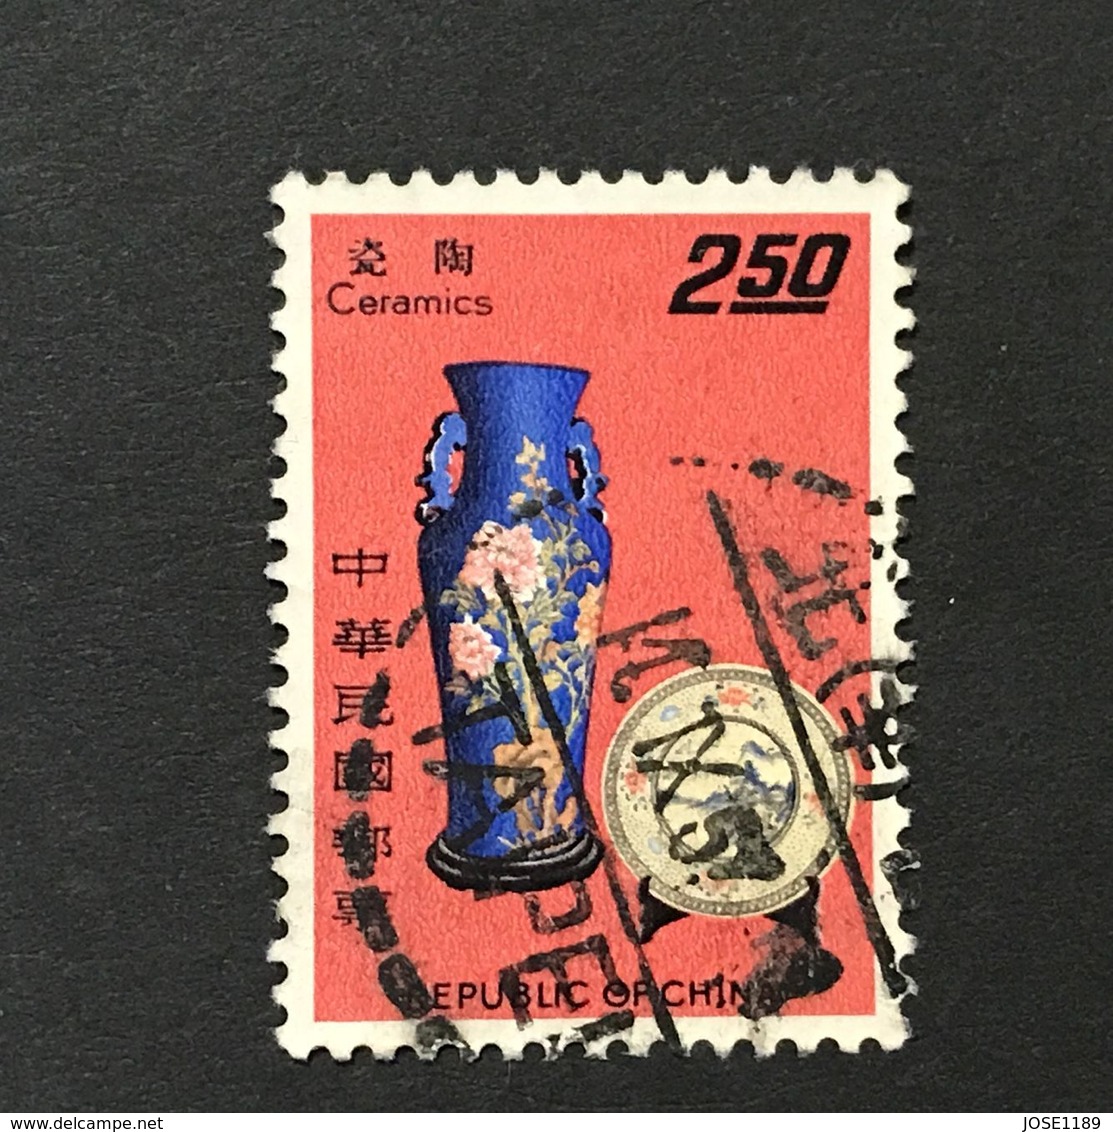 ◆◆◆Taiwán 1967  Taiwan Handicraft Industry.   $2.50   USED   AA6891 - Usados